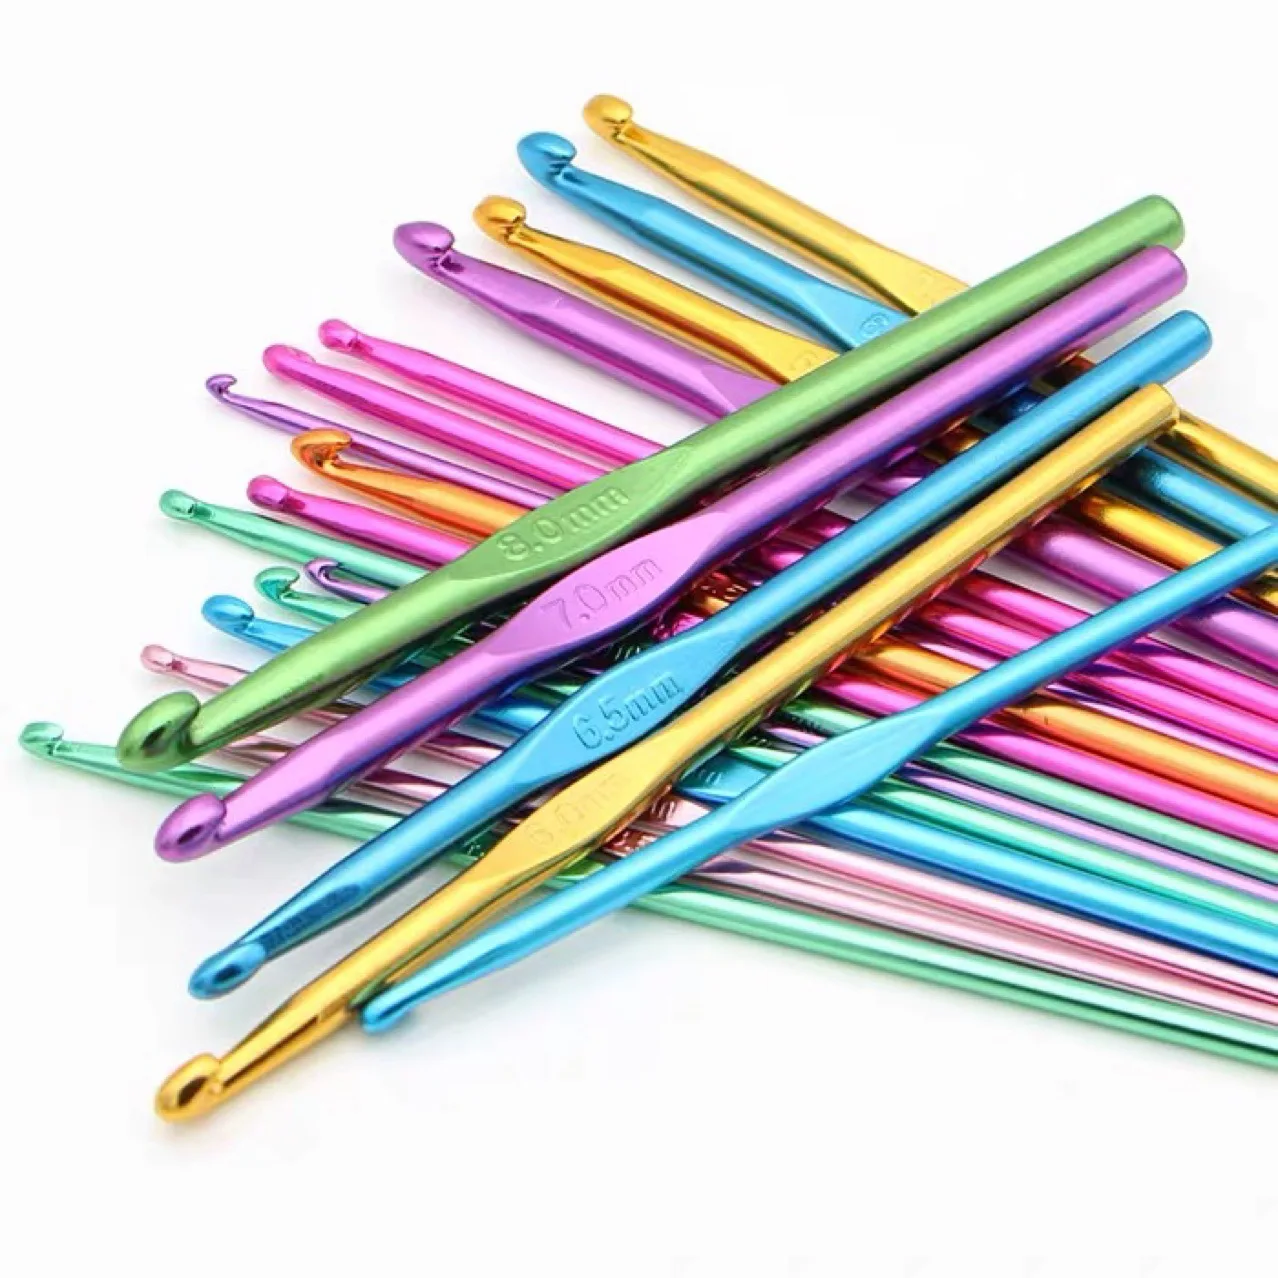 

12 шт./лот, многоцветные Алюминиевые крючки для вязания с одной головкой, 2-8 мм, спицы для вязания, плетение «сделай сам», инструменты для вязания и плетения